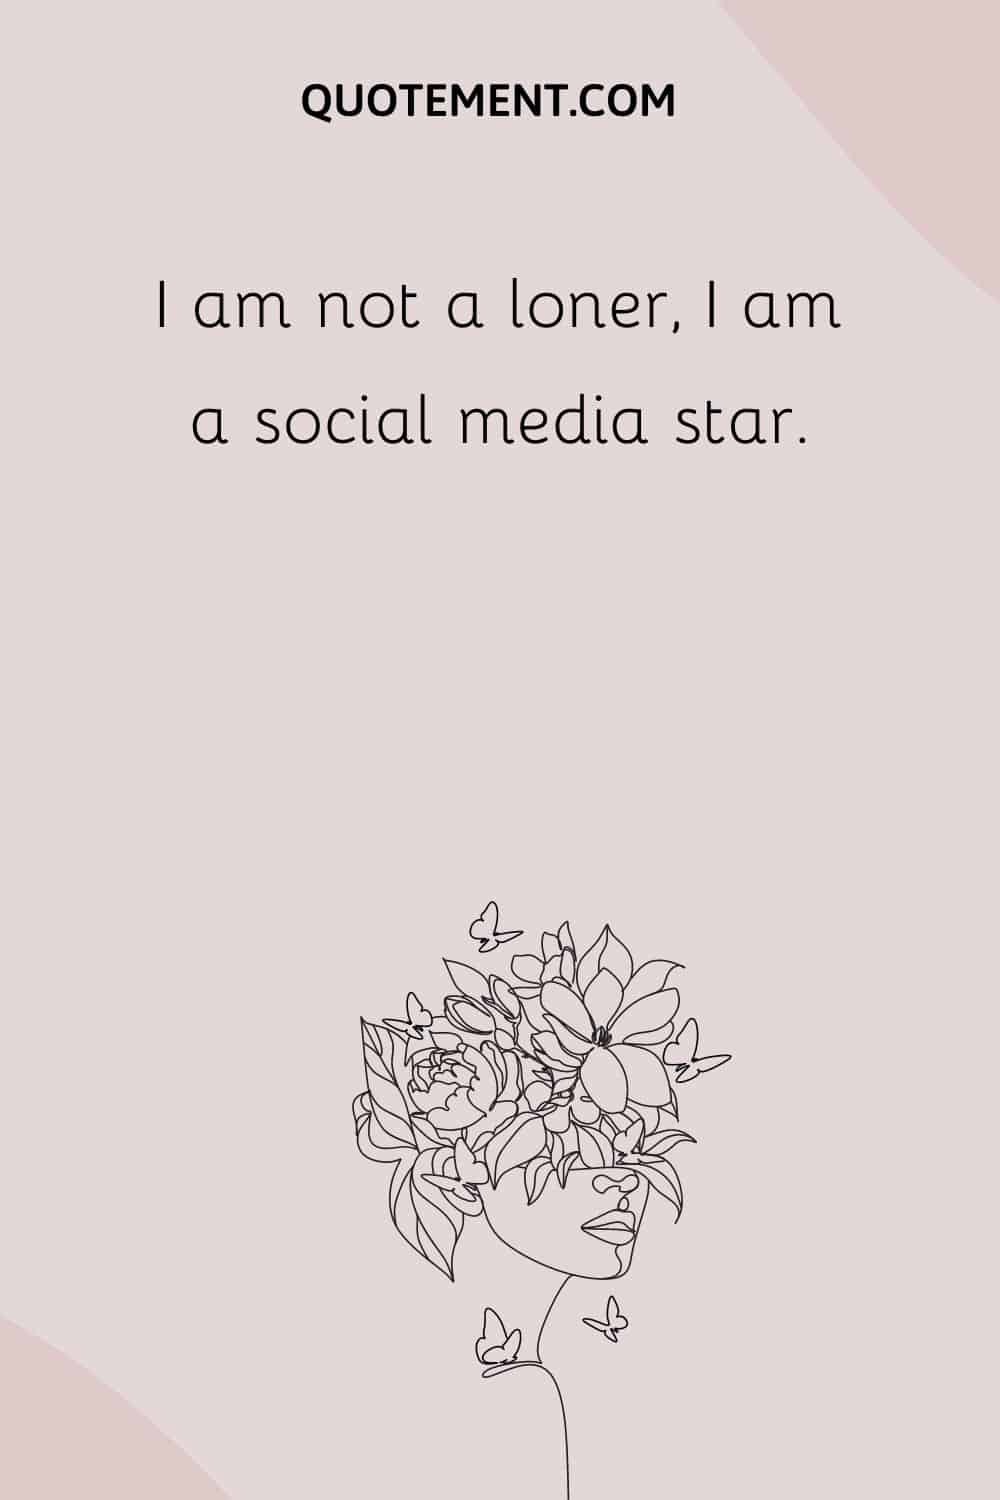 I am not a loner, I am a social media star.